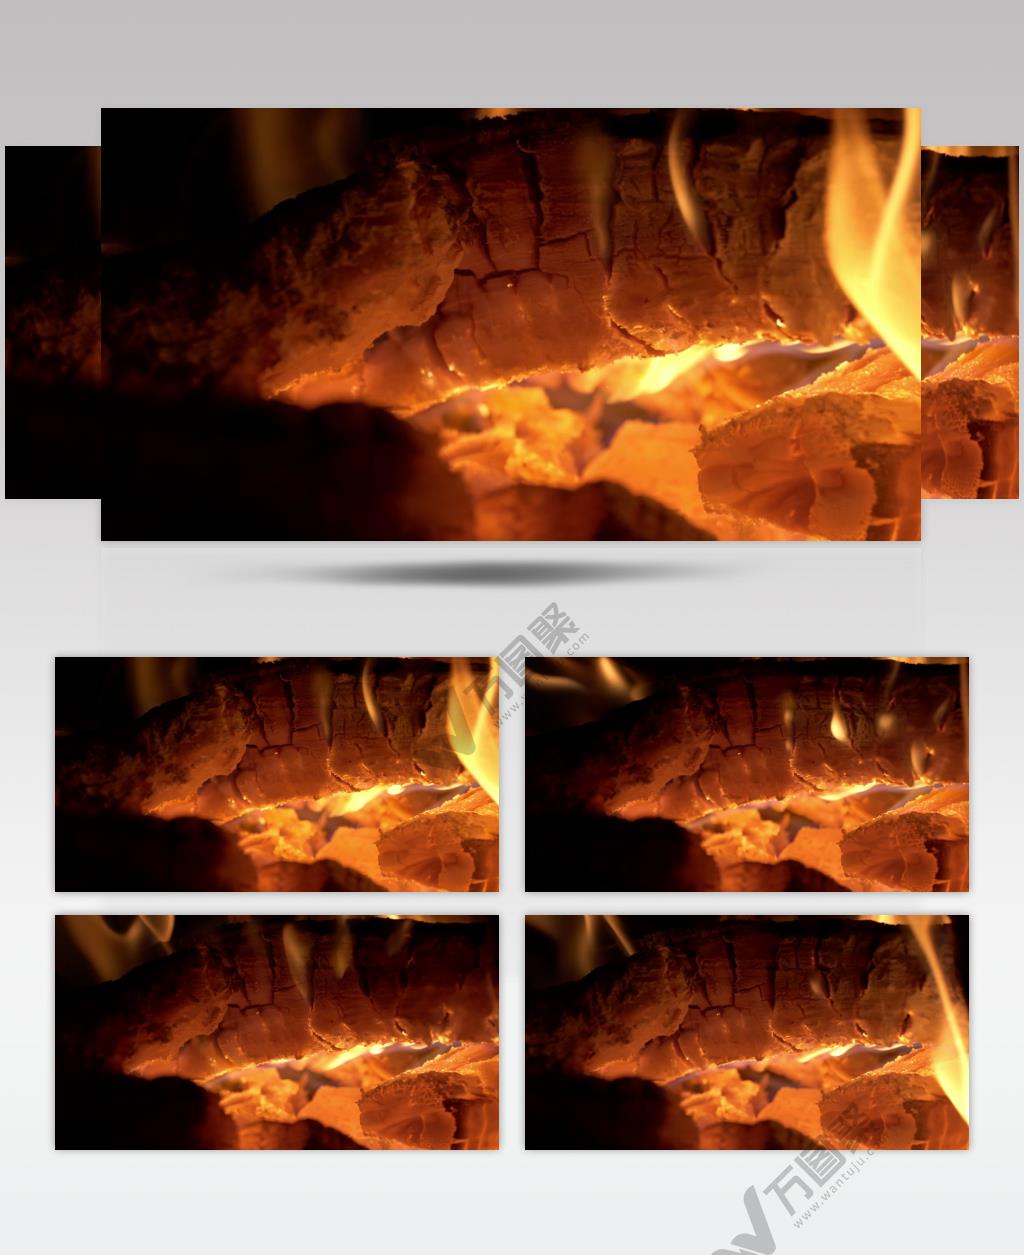 燃烧的木炭木柴火焰火堆篝火